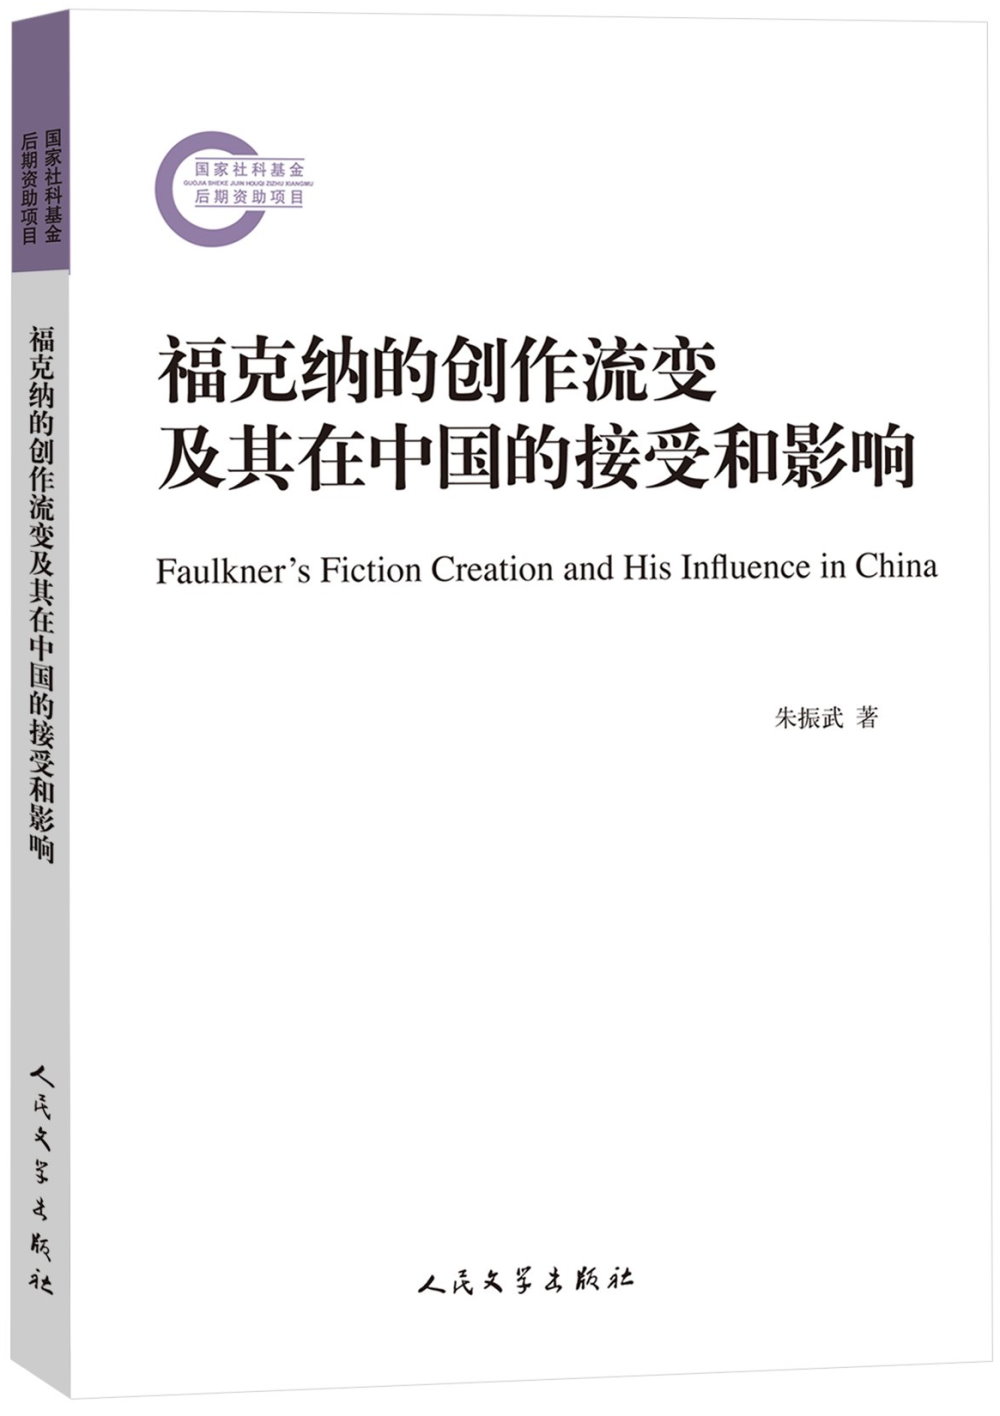 福克納的創作流變及其在中國的接受和影響